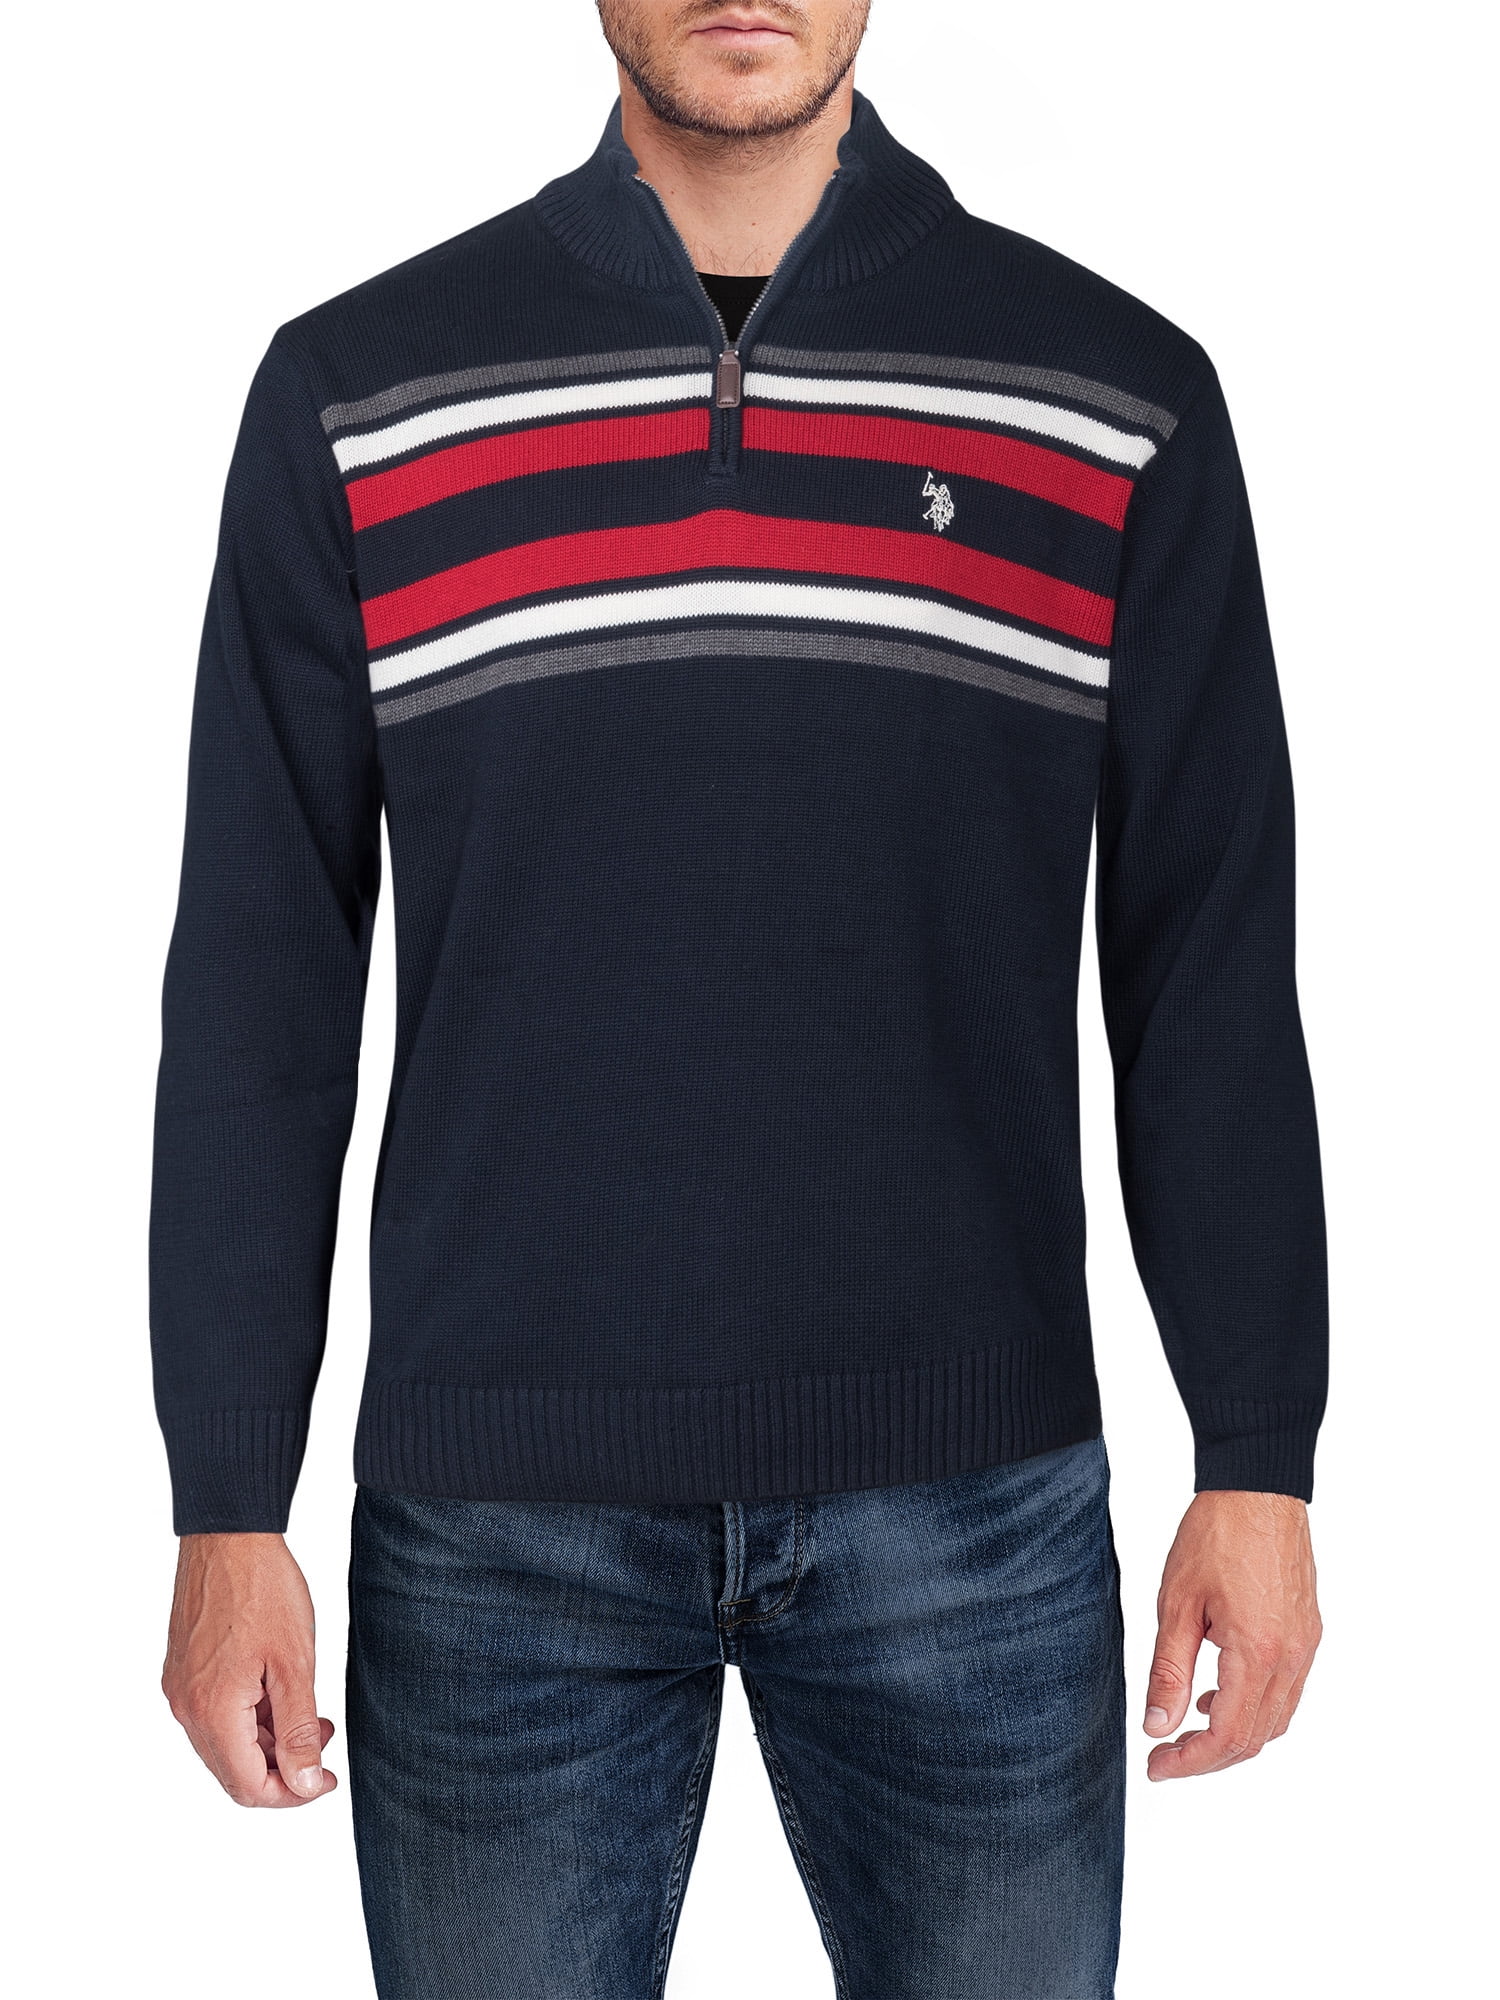 U.S. Polo Assn Men's Chest Striped Quarter Zip Sweater - Walmart.com